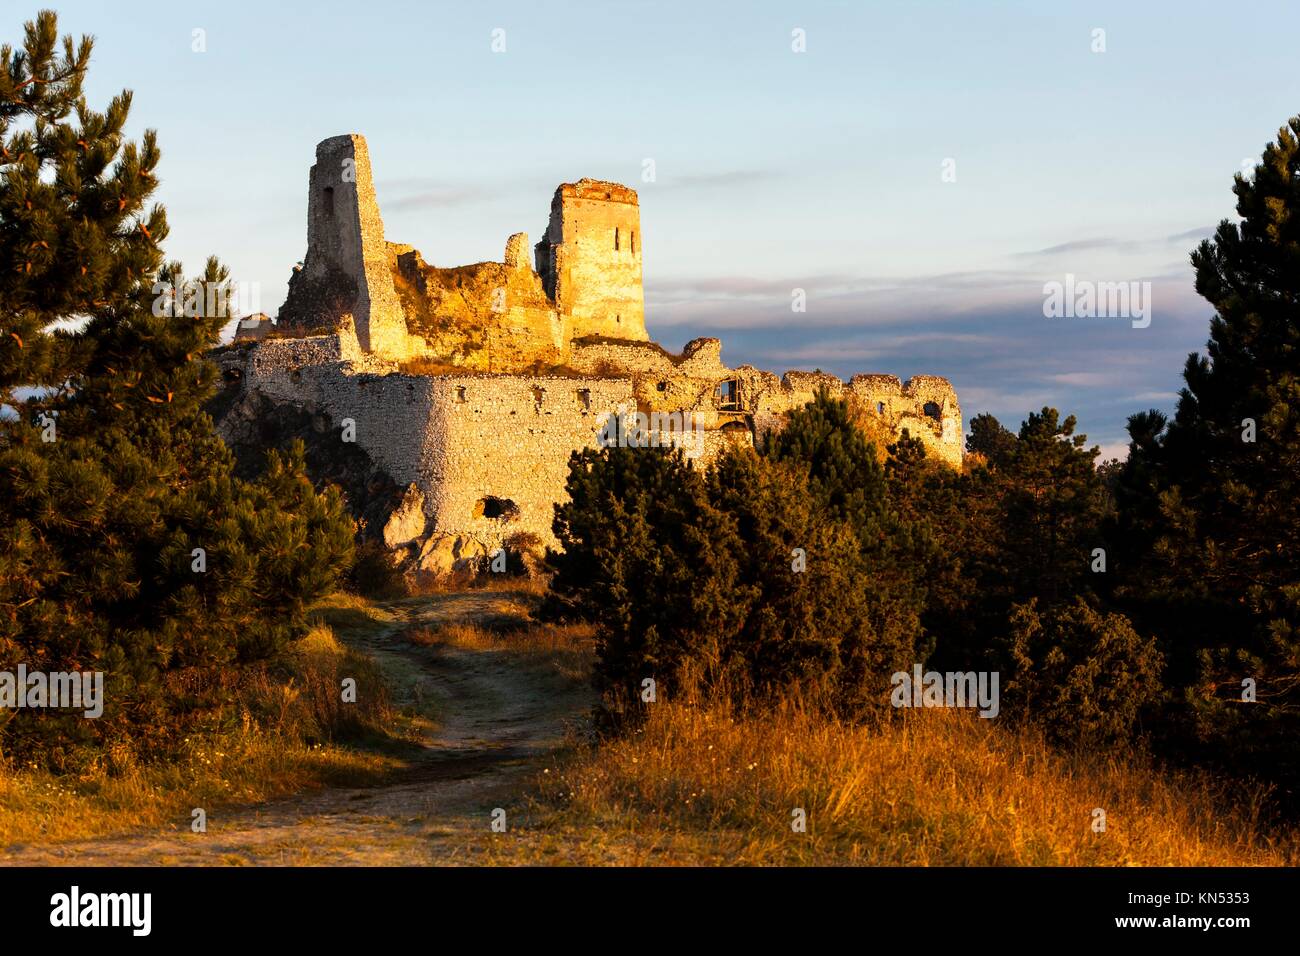 Ruines du château de Cachtice, la Slovaquie. Banque D'Images